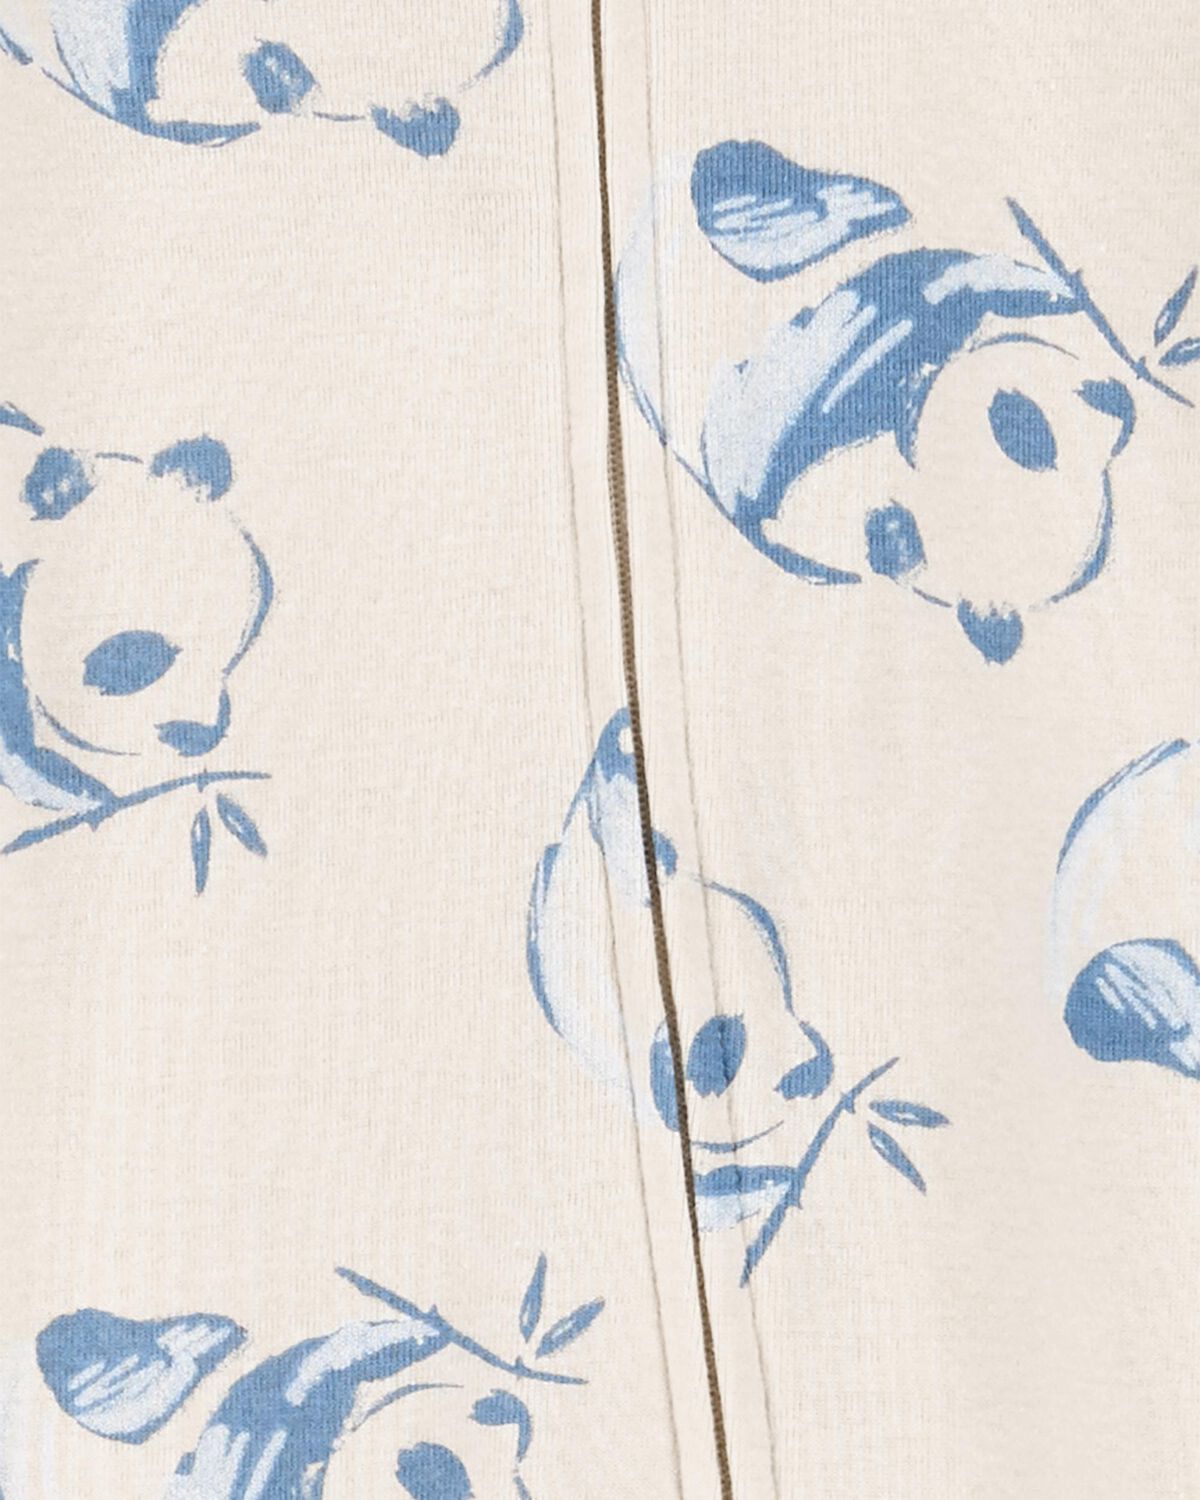 Juego de pijamas y gorras Baby Panda de 2 piezas para dormir y jugar